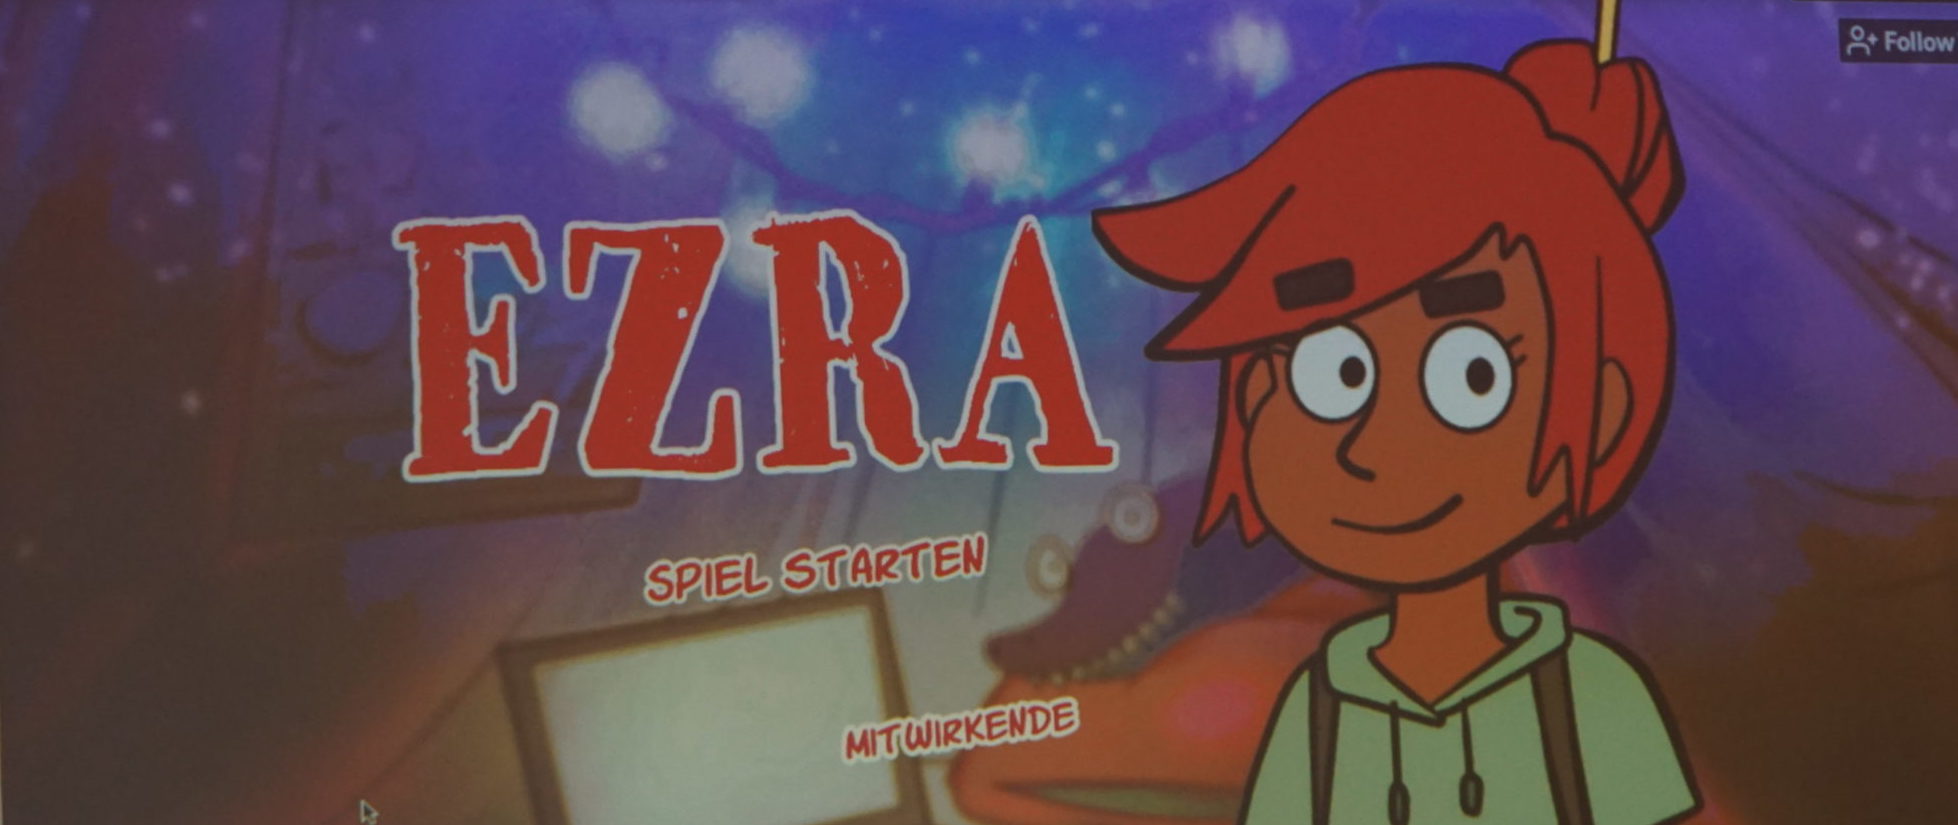 Neben dem Schriftzug "EZRA" steht ein rothaariges Mädchen, es ist im Comicstil gezeichnet.